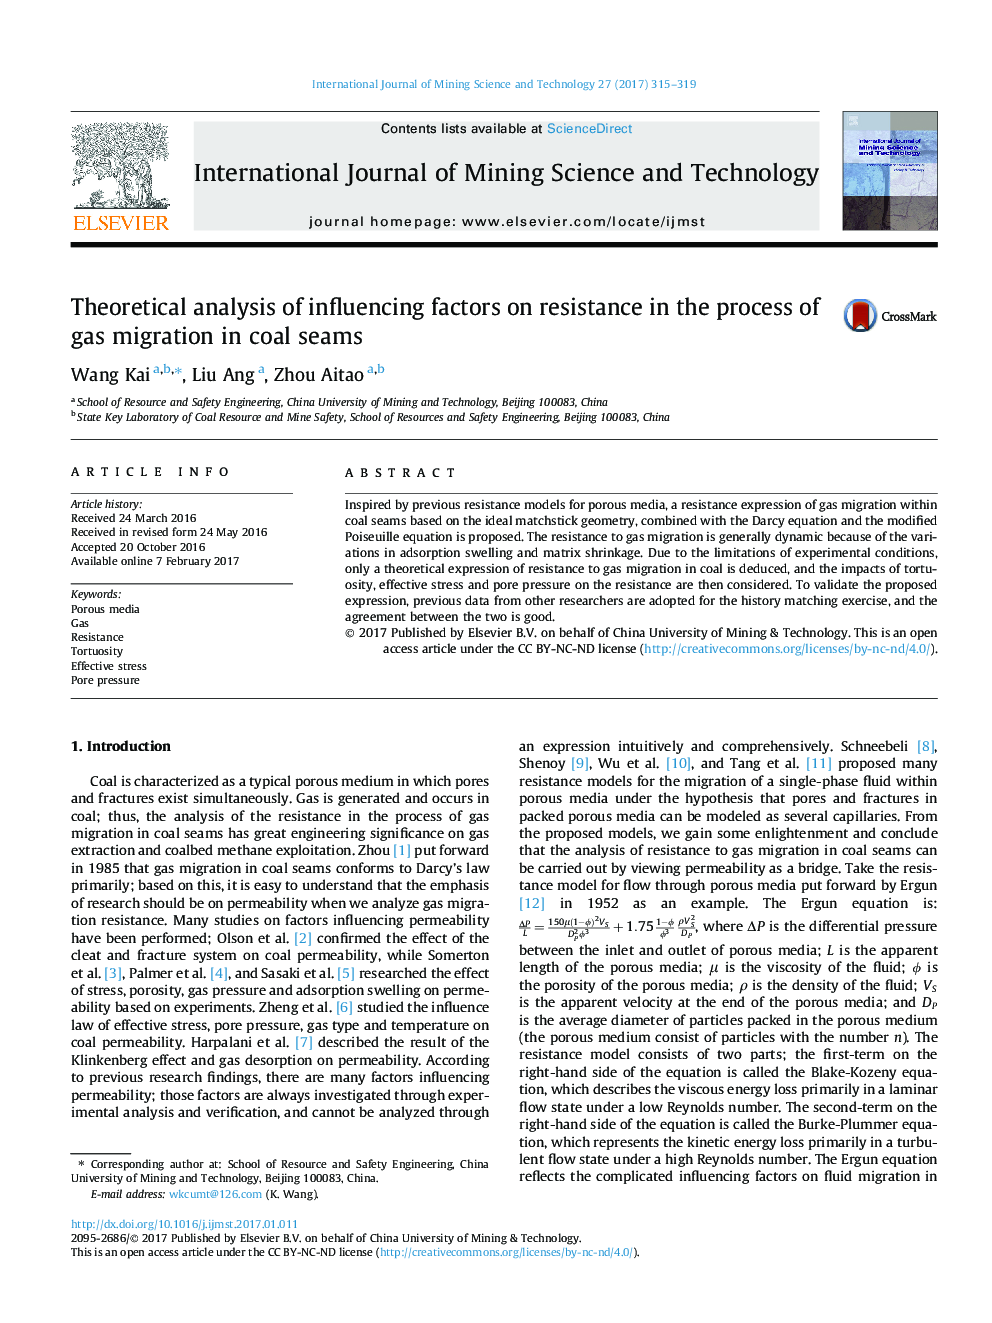 تجزیه و تحلیل نظری عوامل مؤثر بر مقاومت در روند مهاجرت گاز در جوش های زغال سنگ 